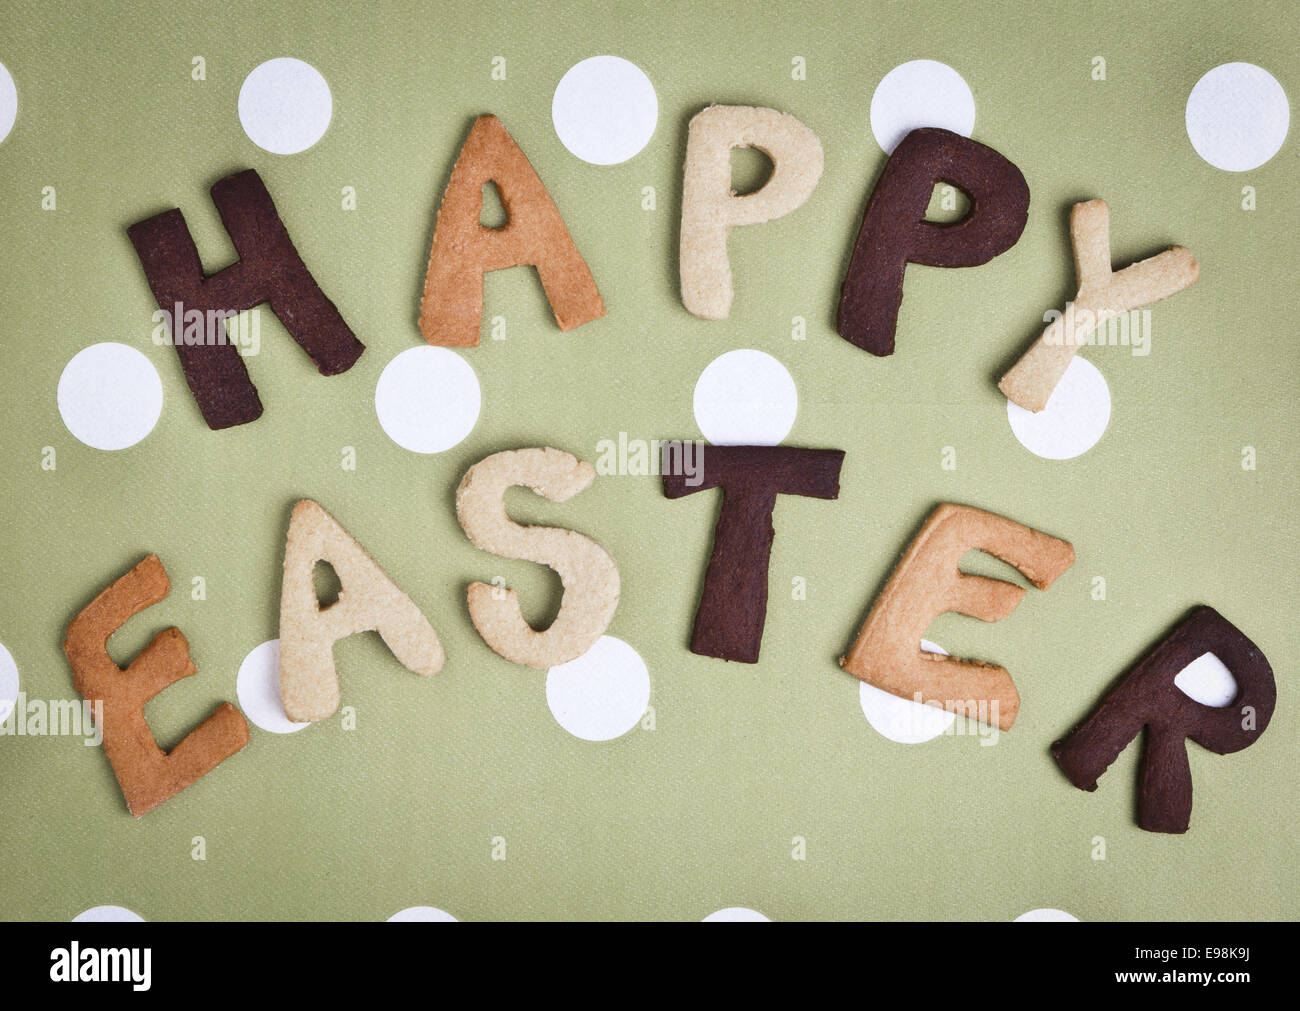 Glücklich Ostern Karte auf grau grün Stoff. Frohe Ostern Worte auf eine Terrine Stoff Hintergrund, festliche Karte für Ostern. Stockfoto